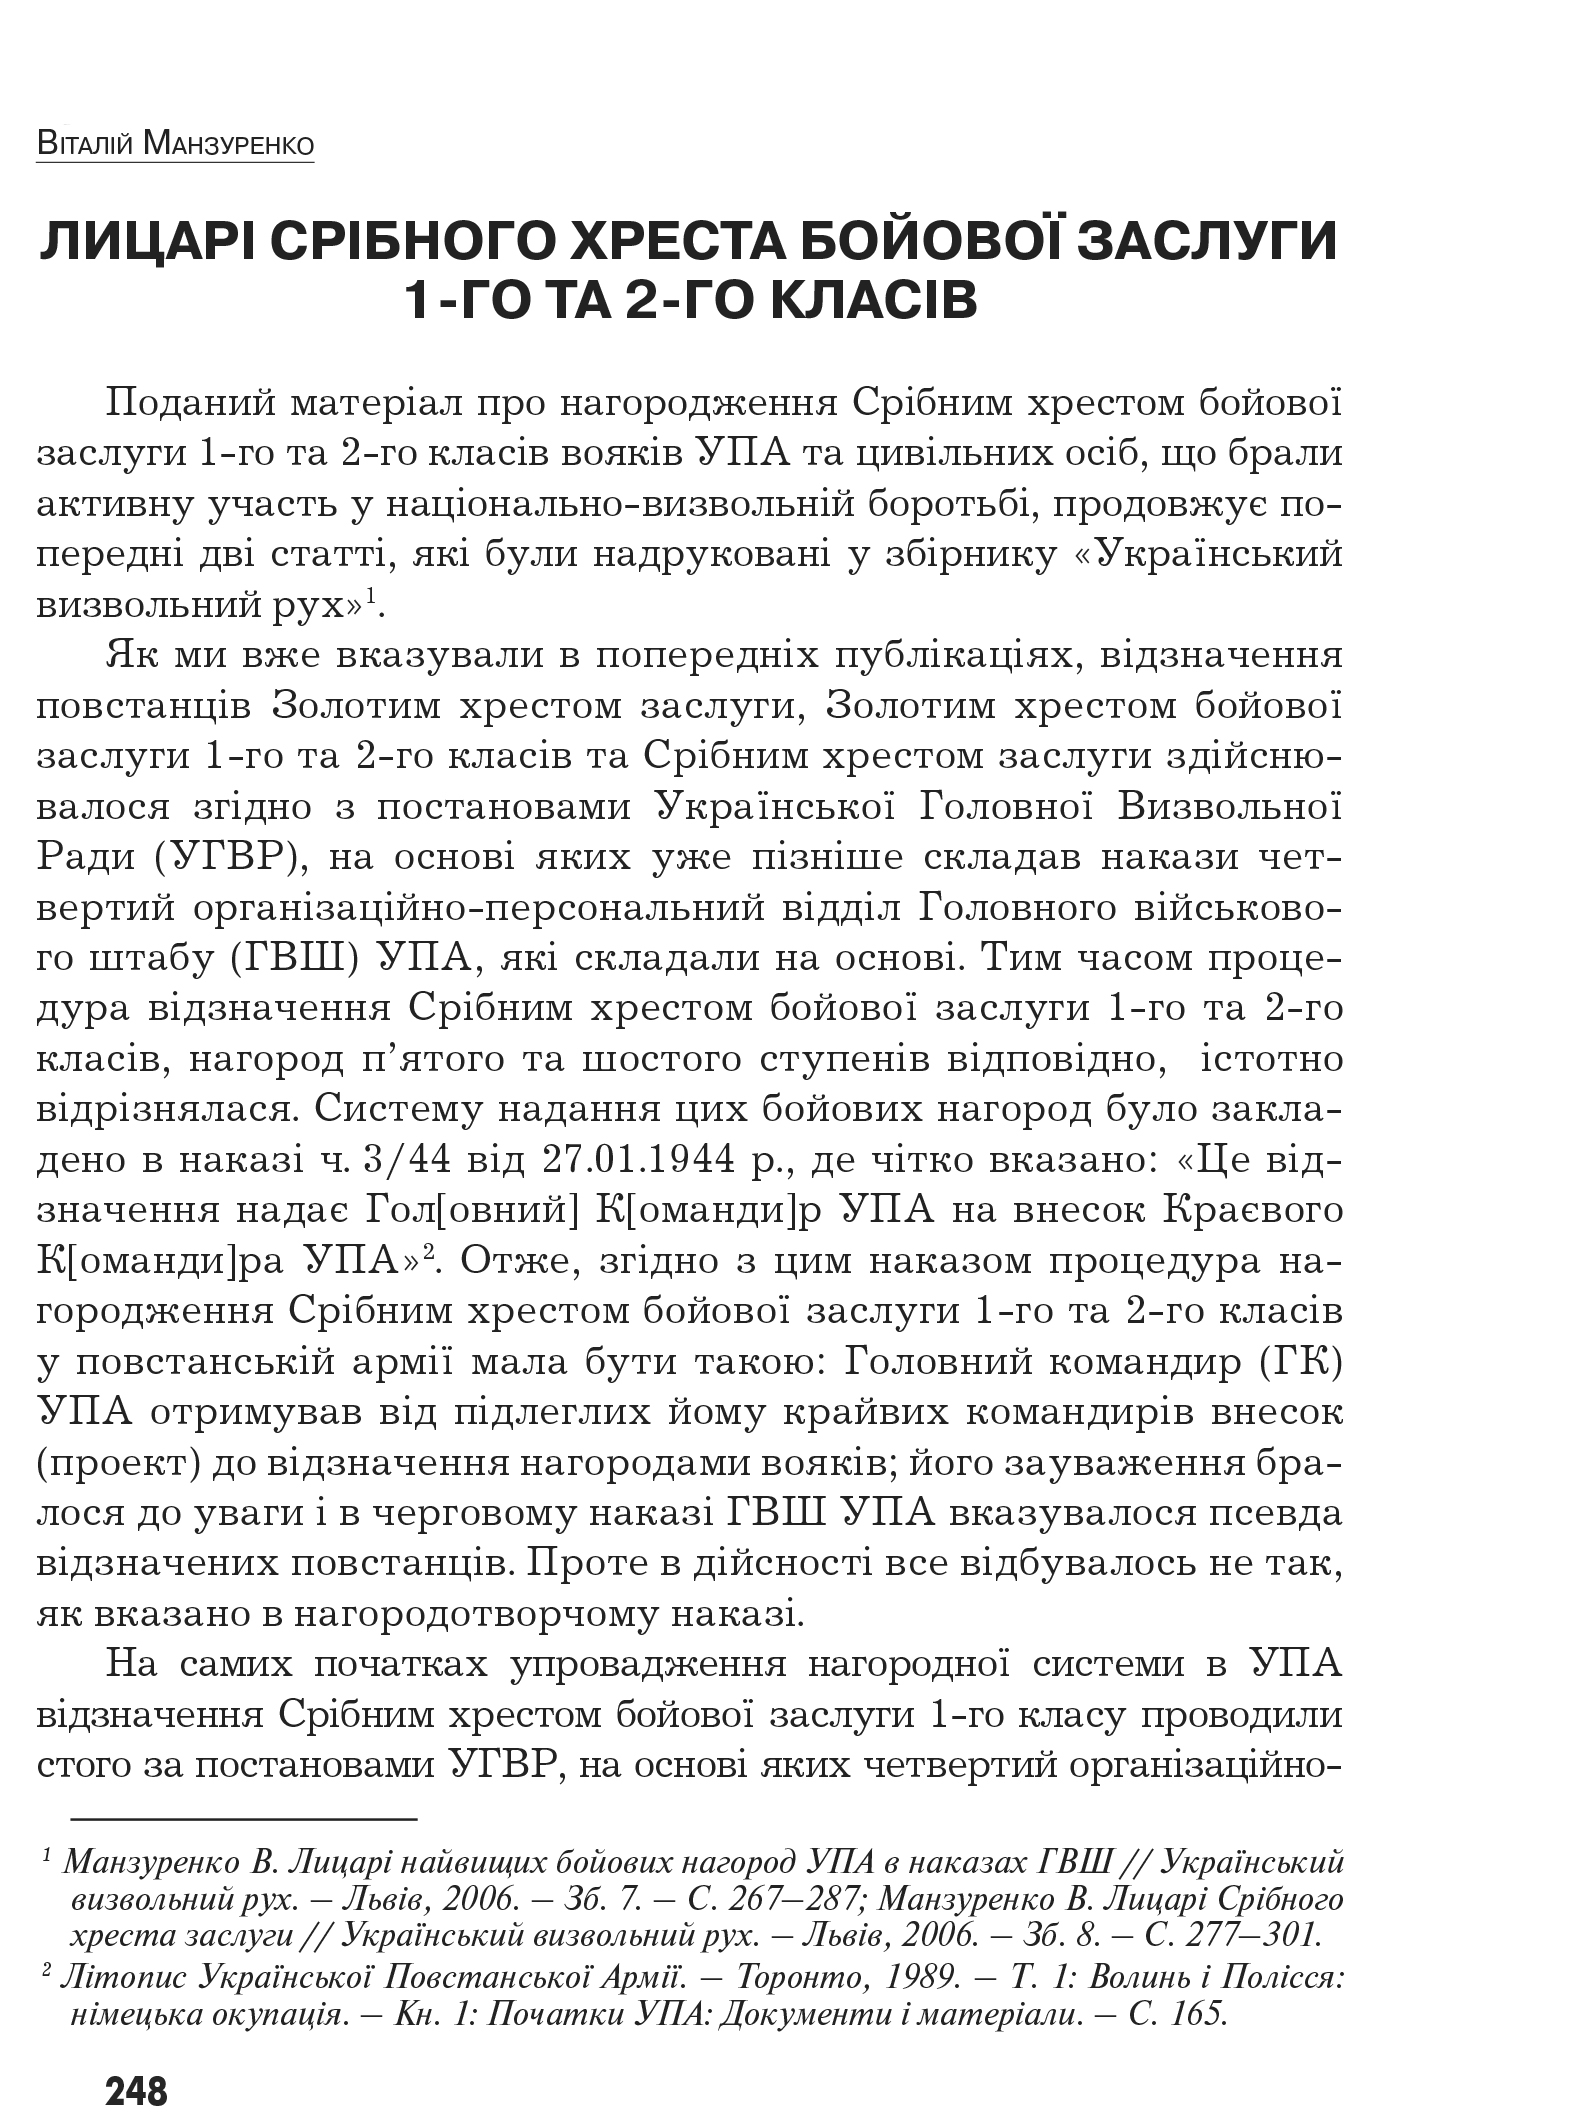 Український визвольний рух №9, ст. 248 - 279